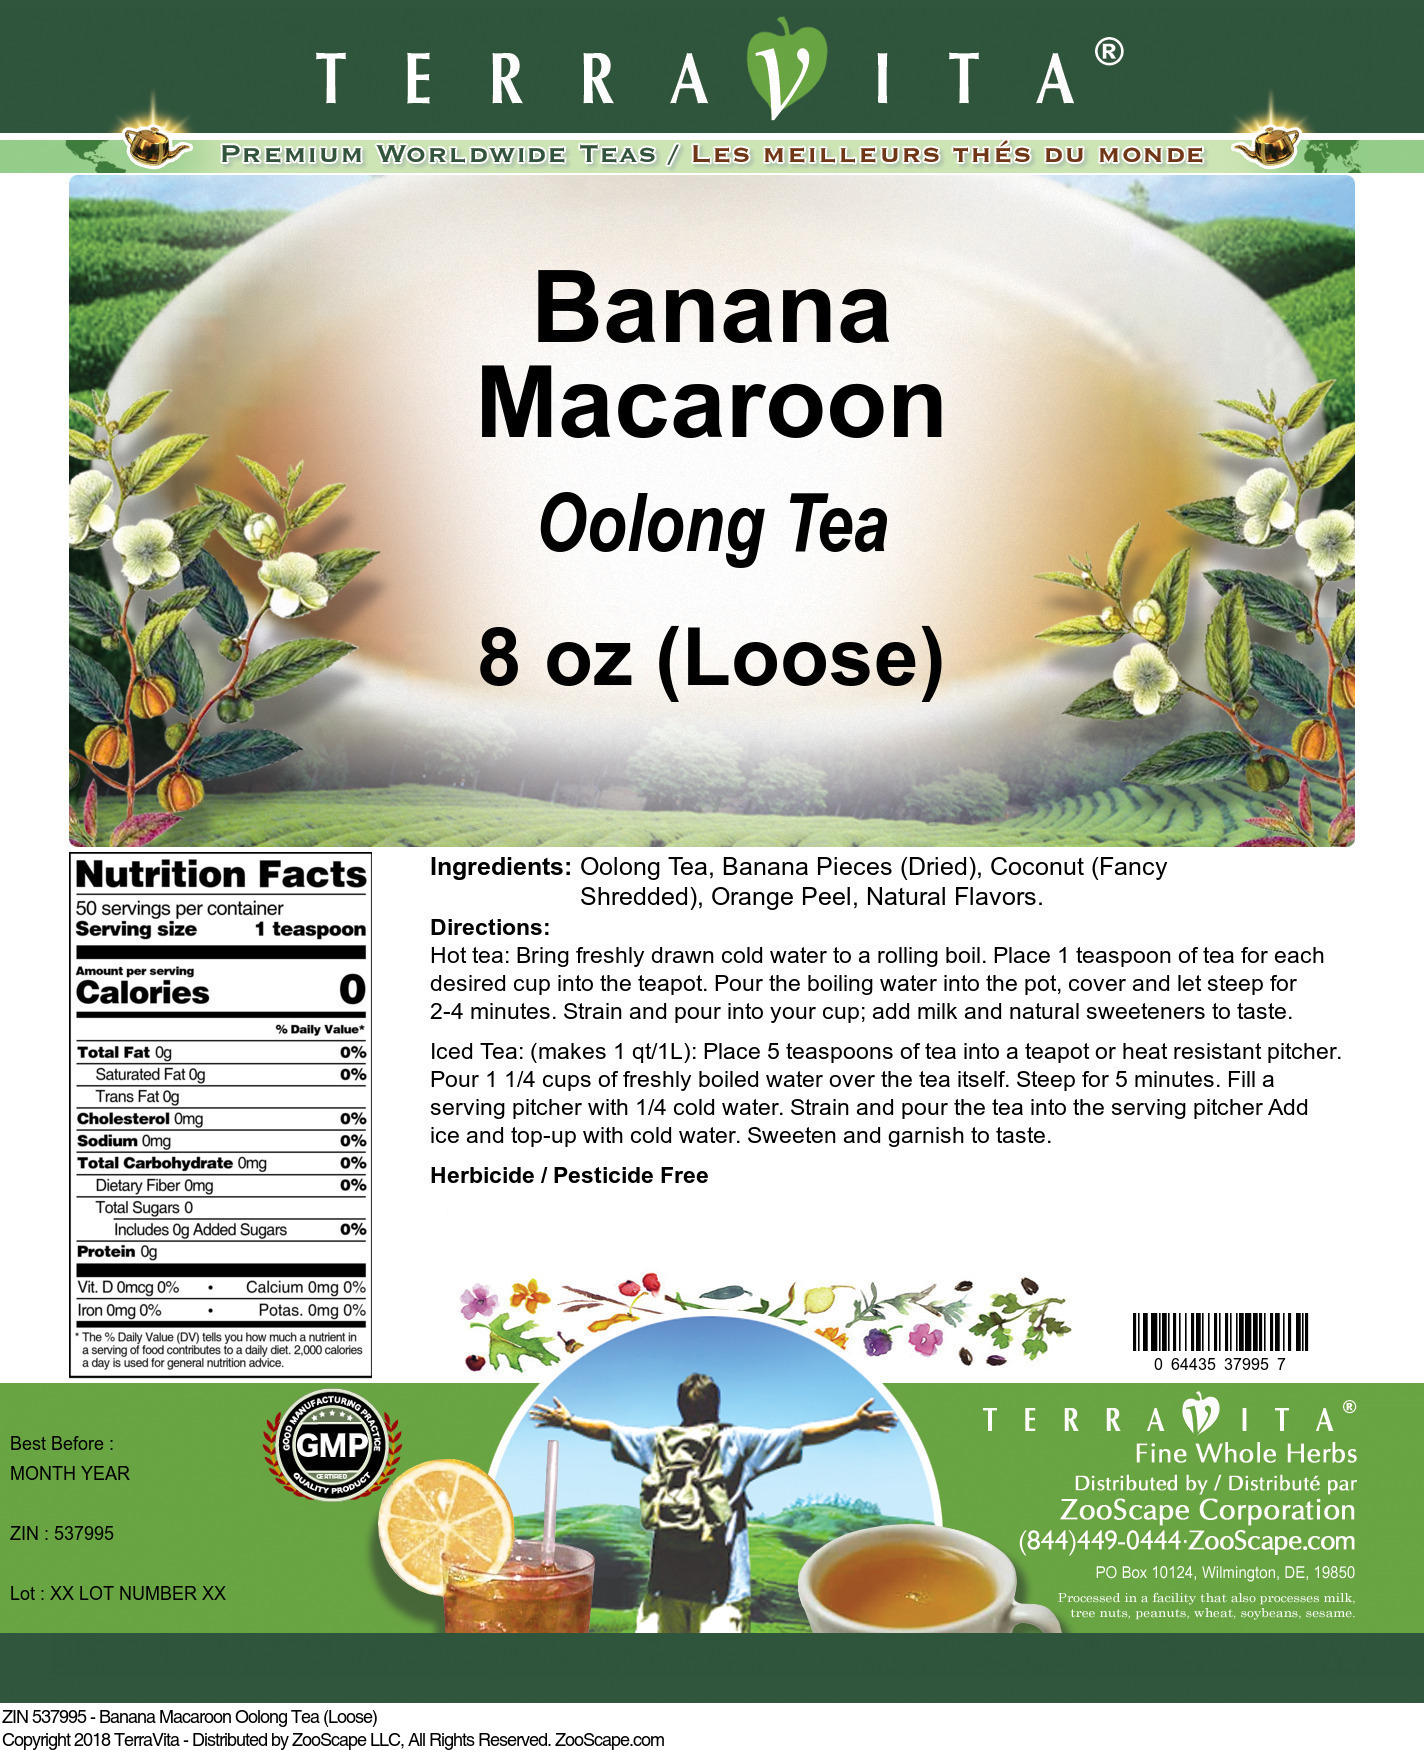 Banana Macaroon Oolong Tea (Loose) - Label